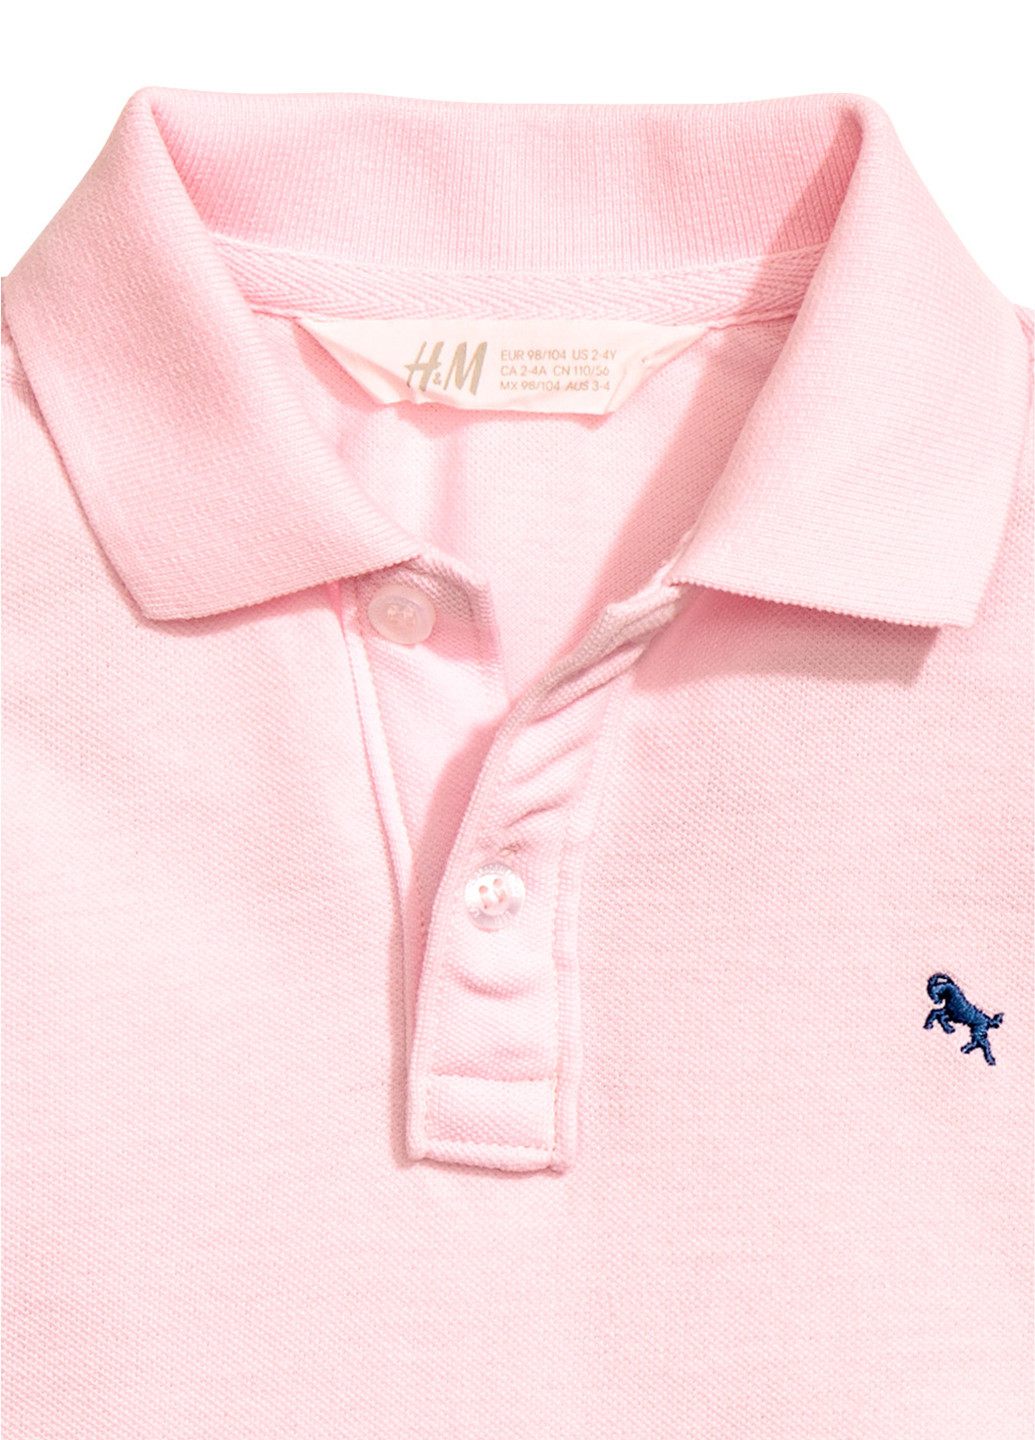 Розовая детская футболка-футболка для мальчика H&M